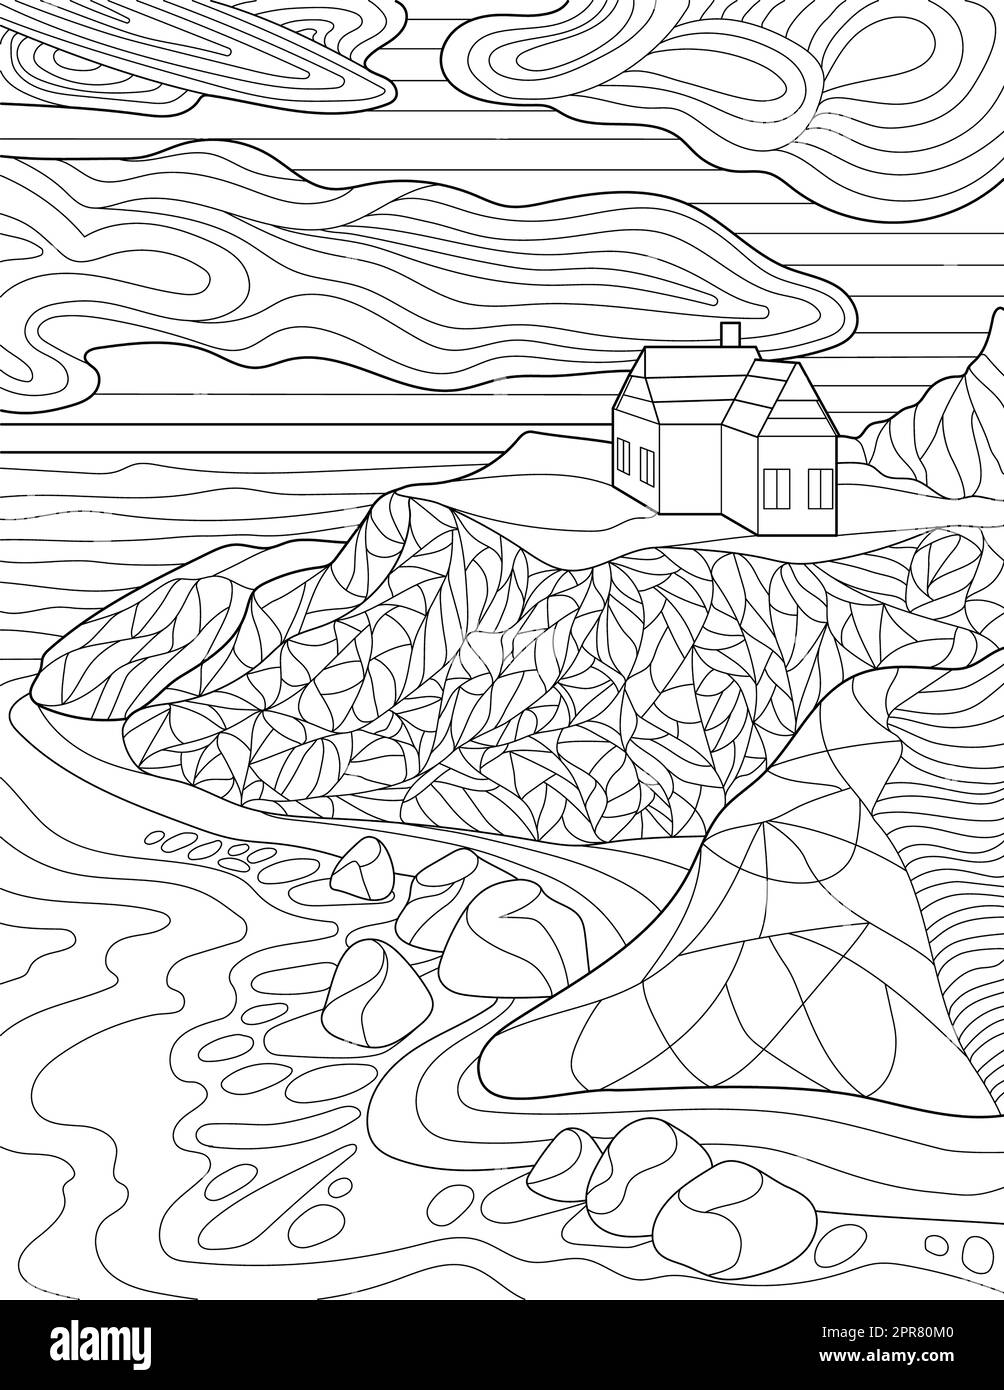 Page de coloriage avec détail House on Hill, Clouds, Rocks et Ocean. Banque D'Images